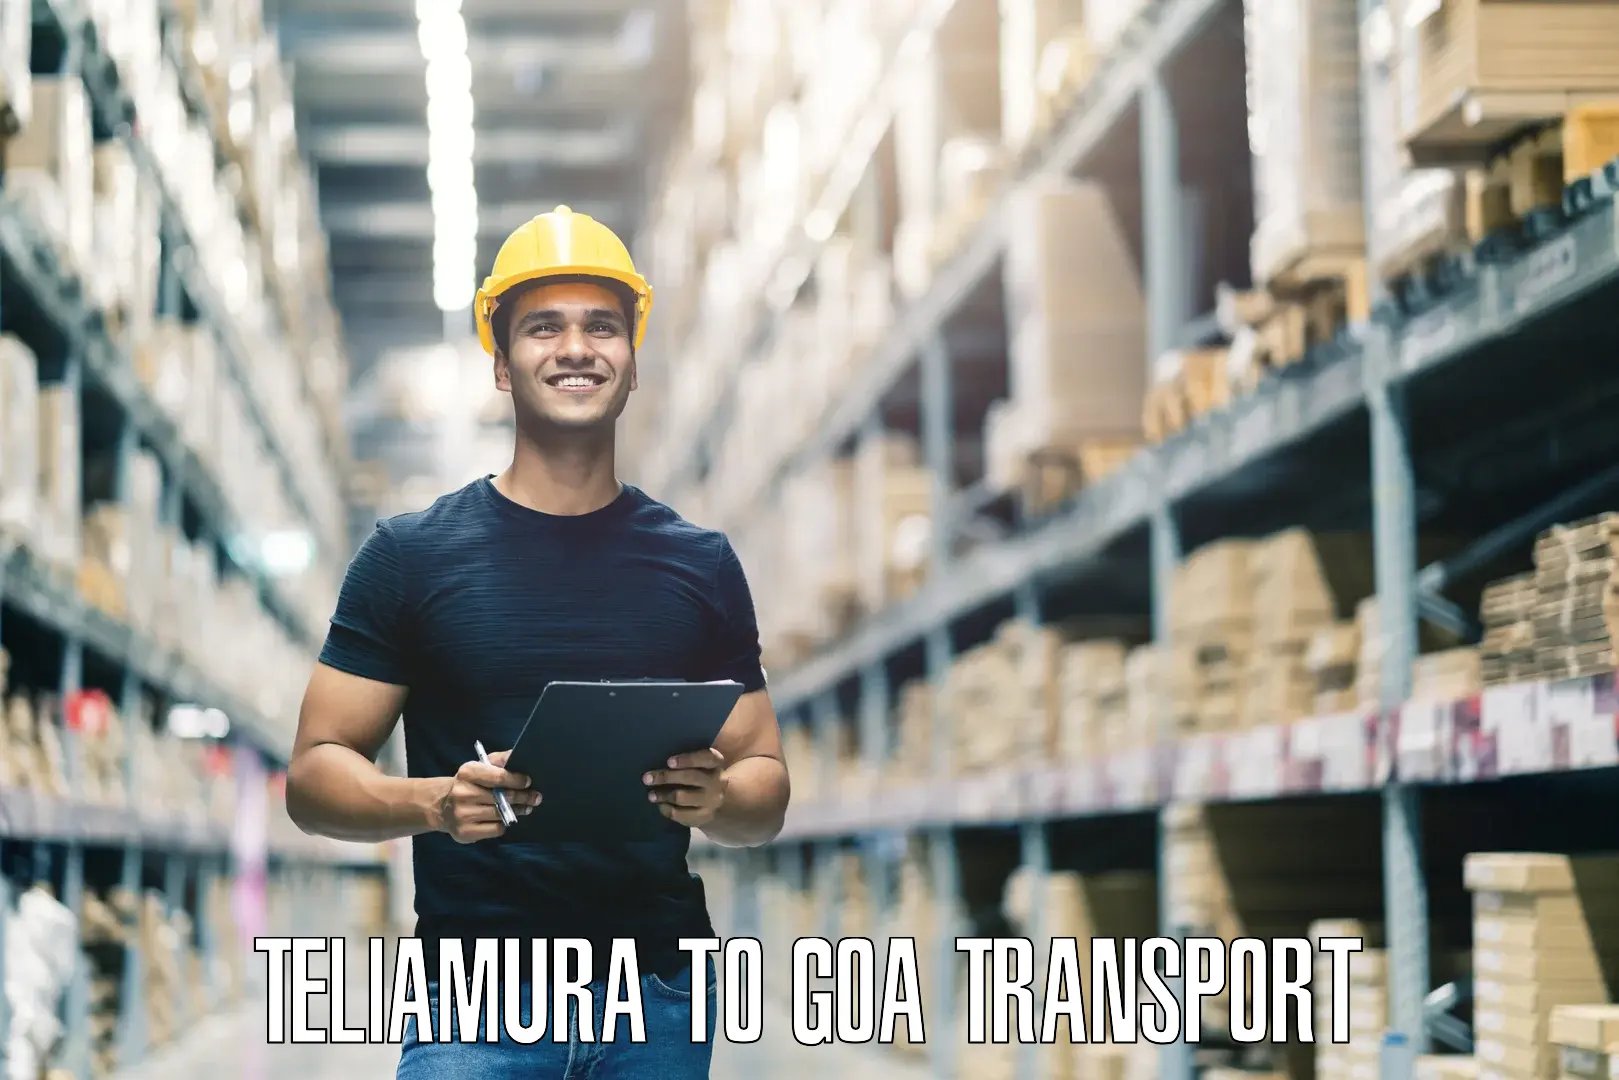 Shipping services Teliamura to Ponda